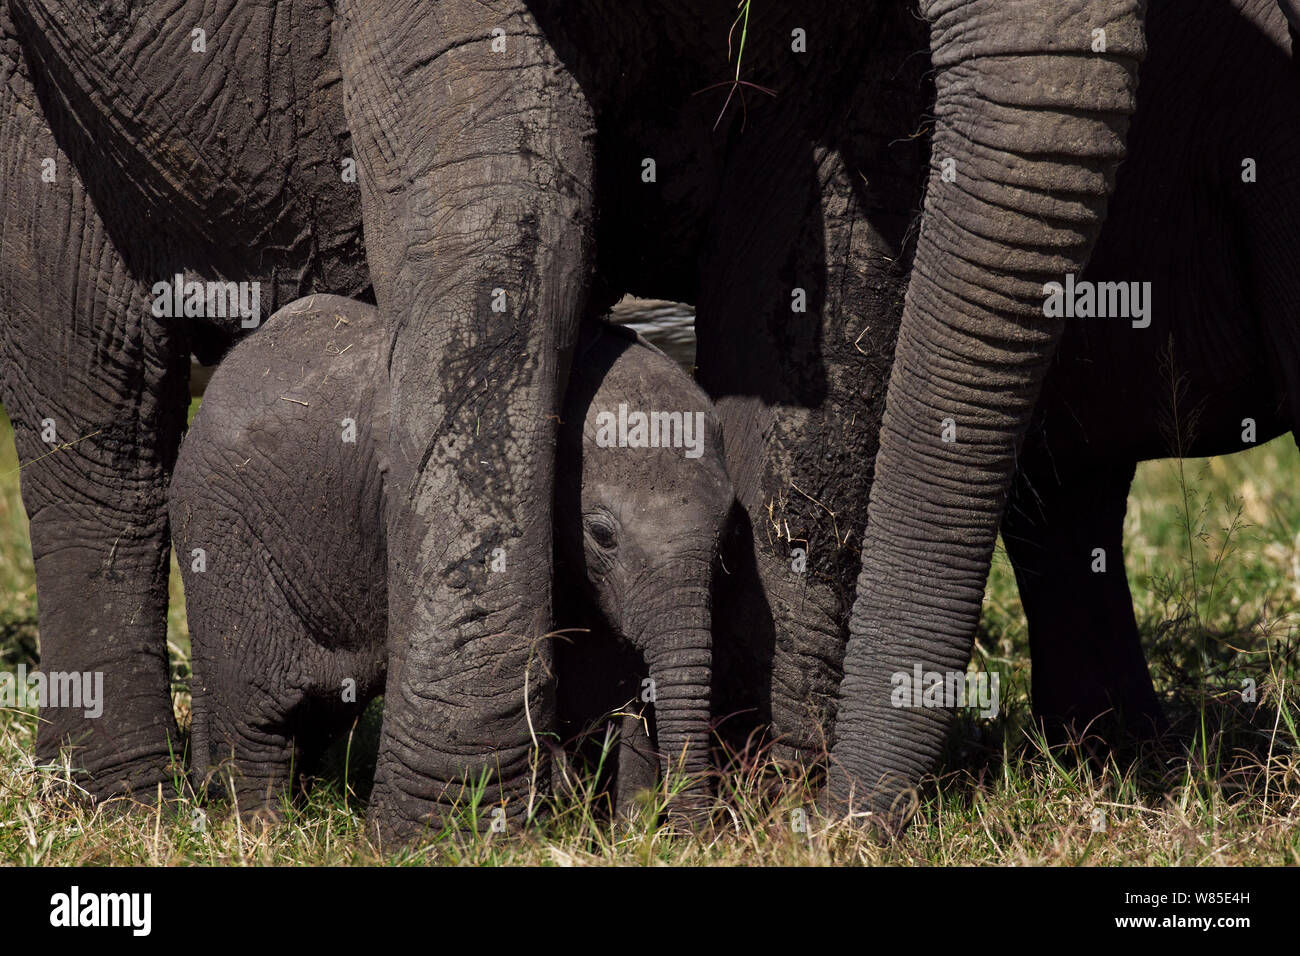 Afrikanischer Elefant (Loxodonta africana) Kalb stehen zwischen den Beinen der Erwachsenen für den Schutz. Masai Mara National Reserve, Kenia. Feb 2012. Stockfoto